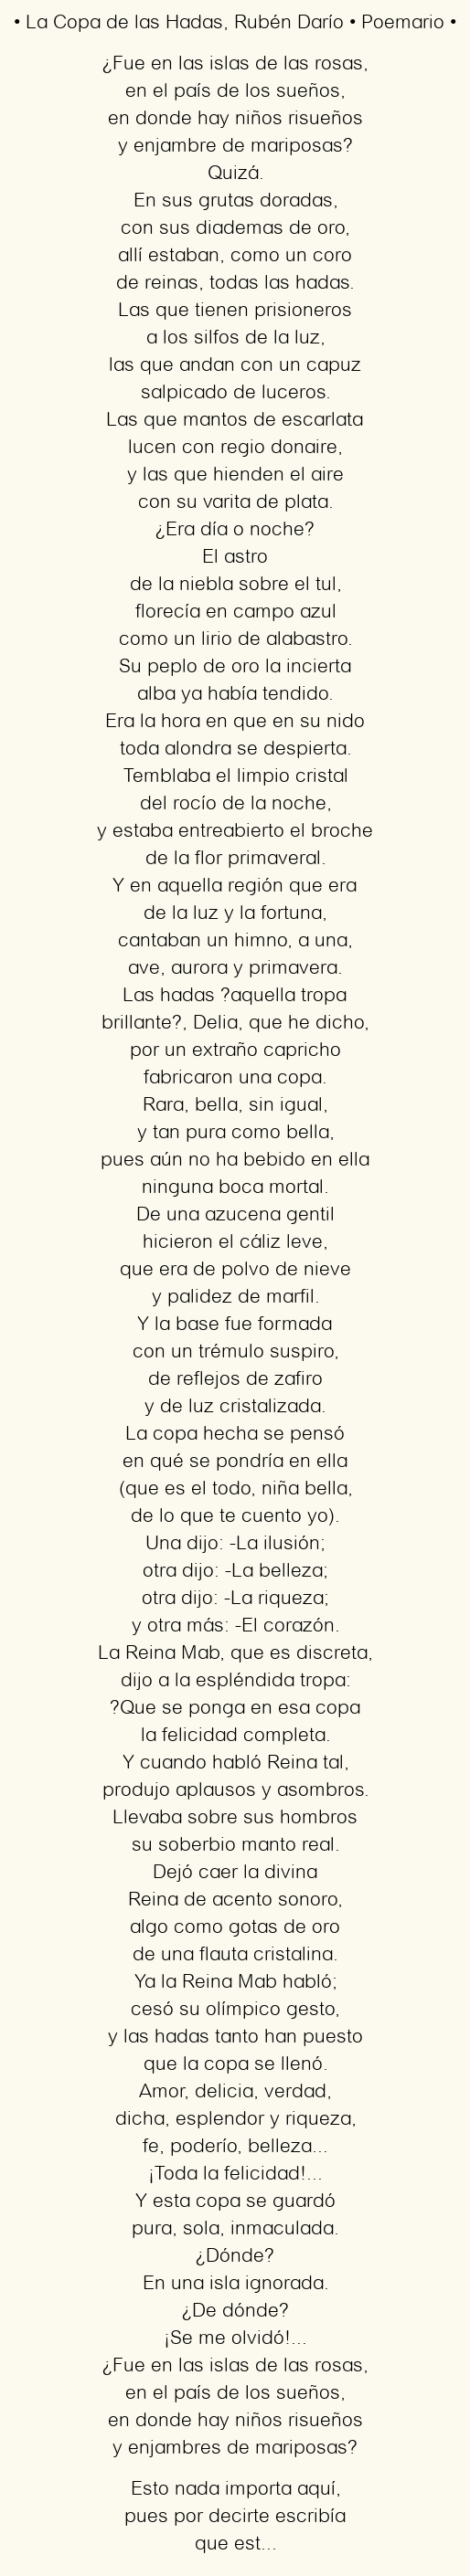 Imagen con el poema La Copa de las Hadas, por Rubén Darío